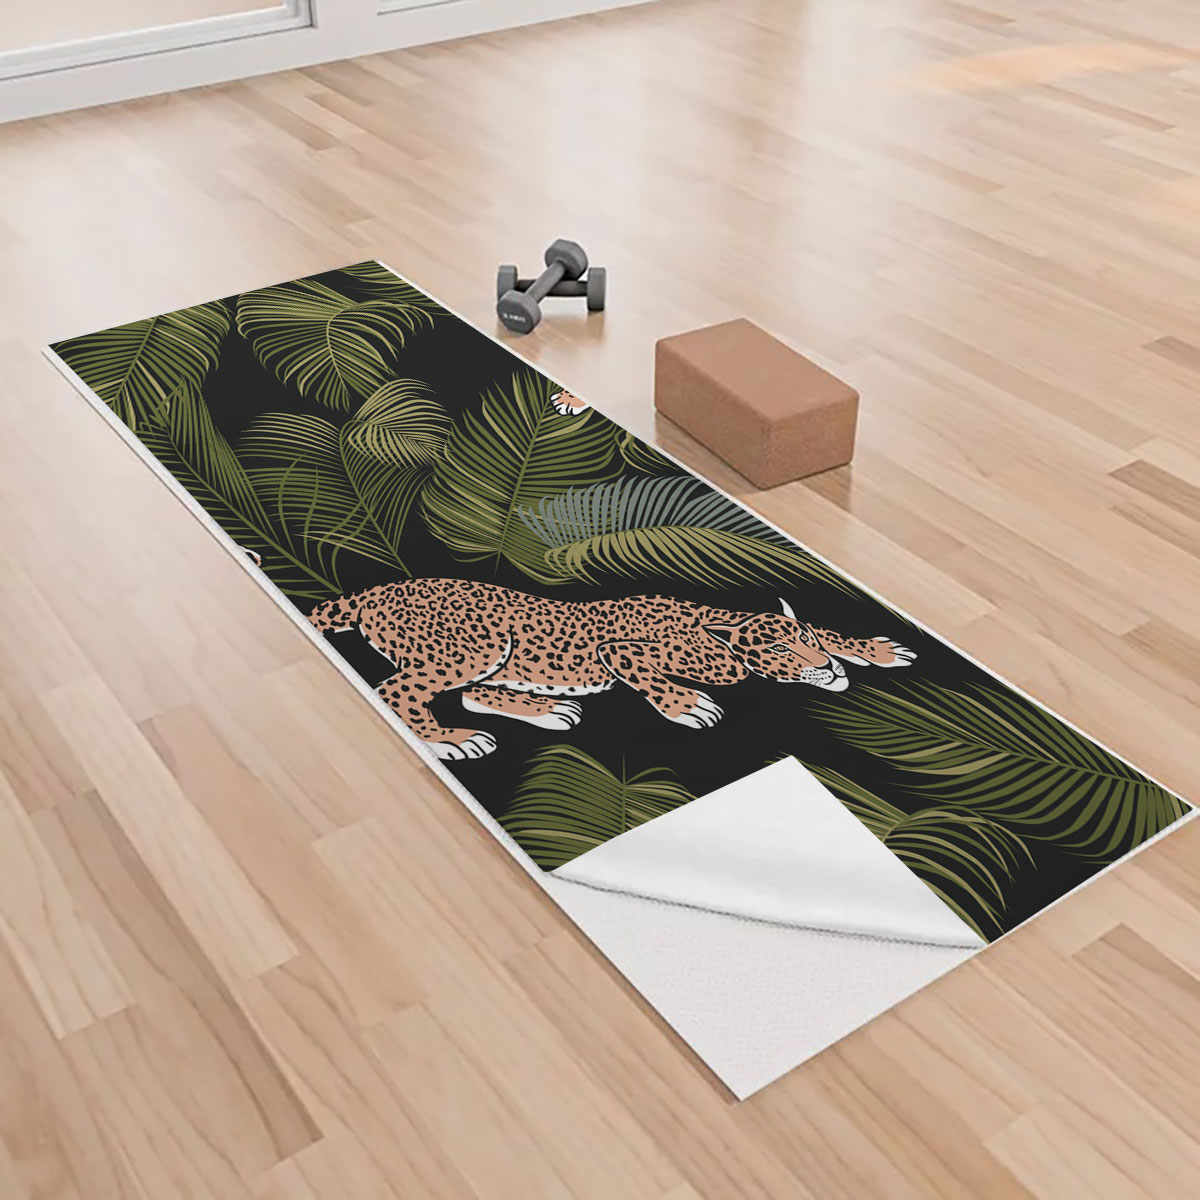 Hunting Jaguar Yoga Towels